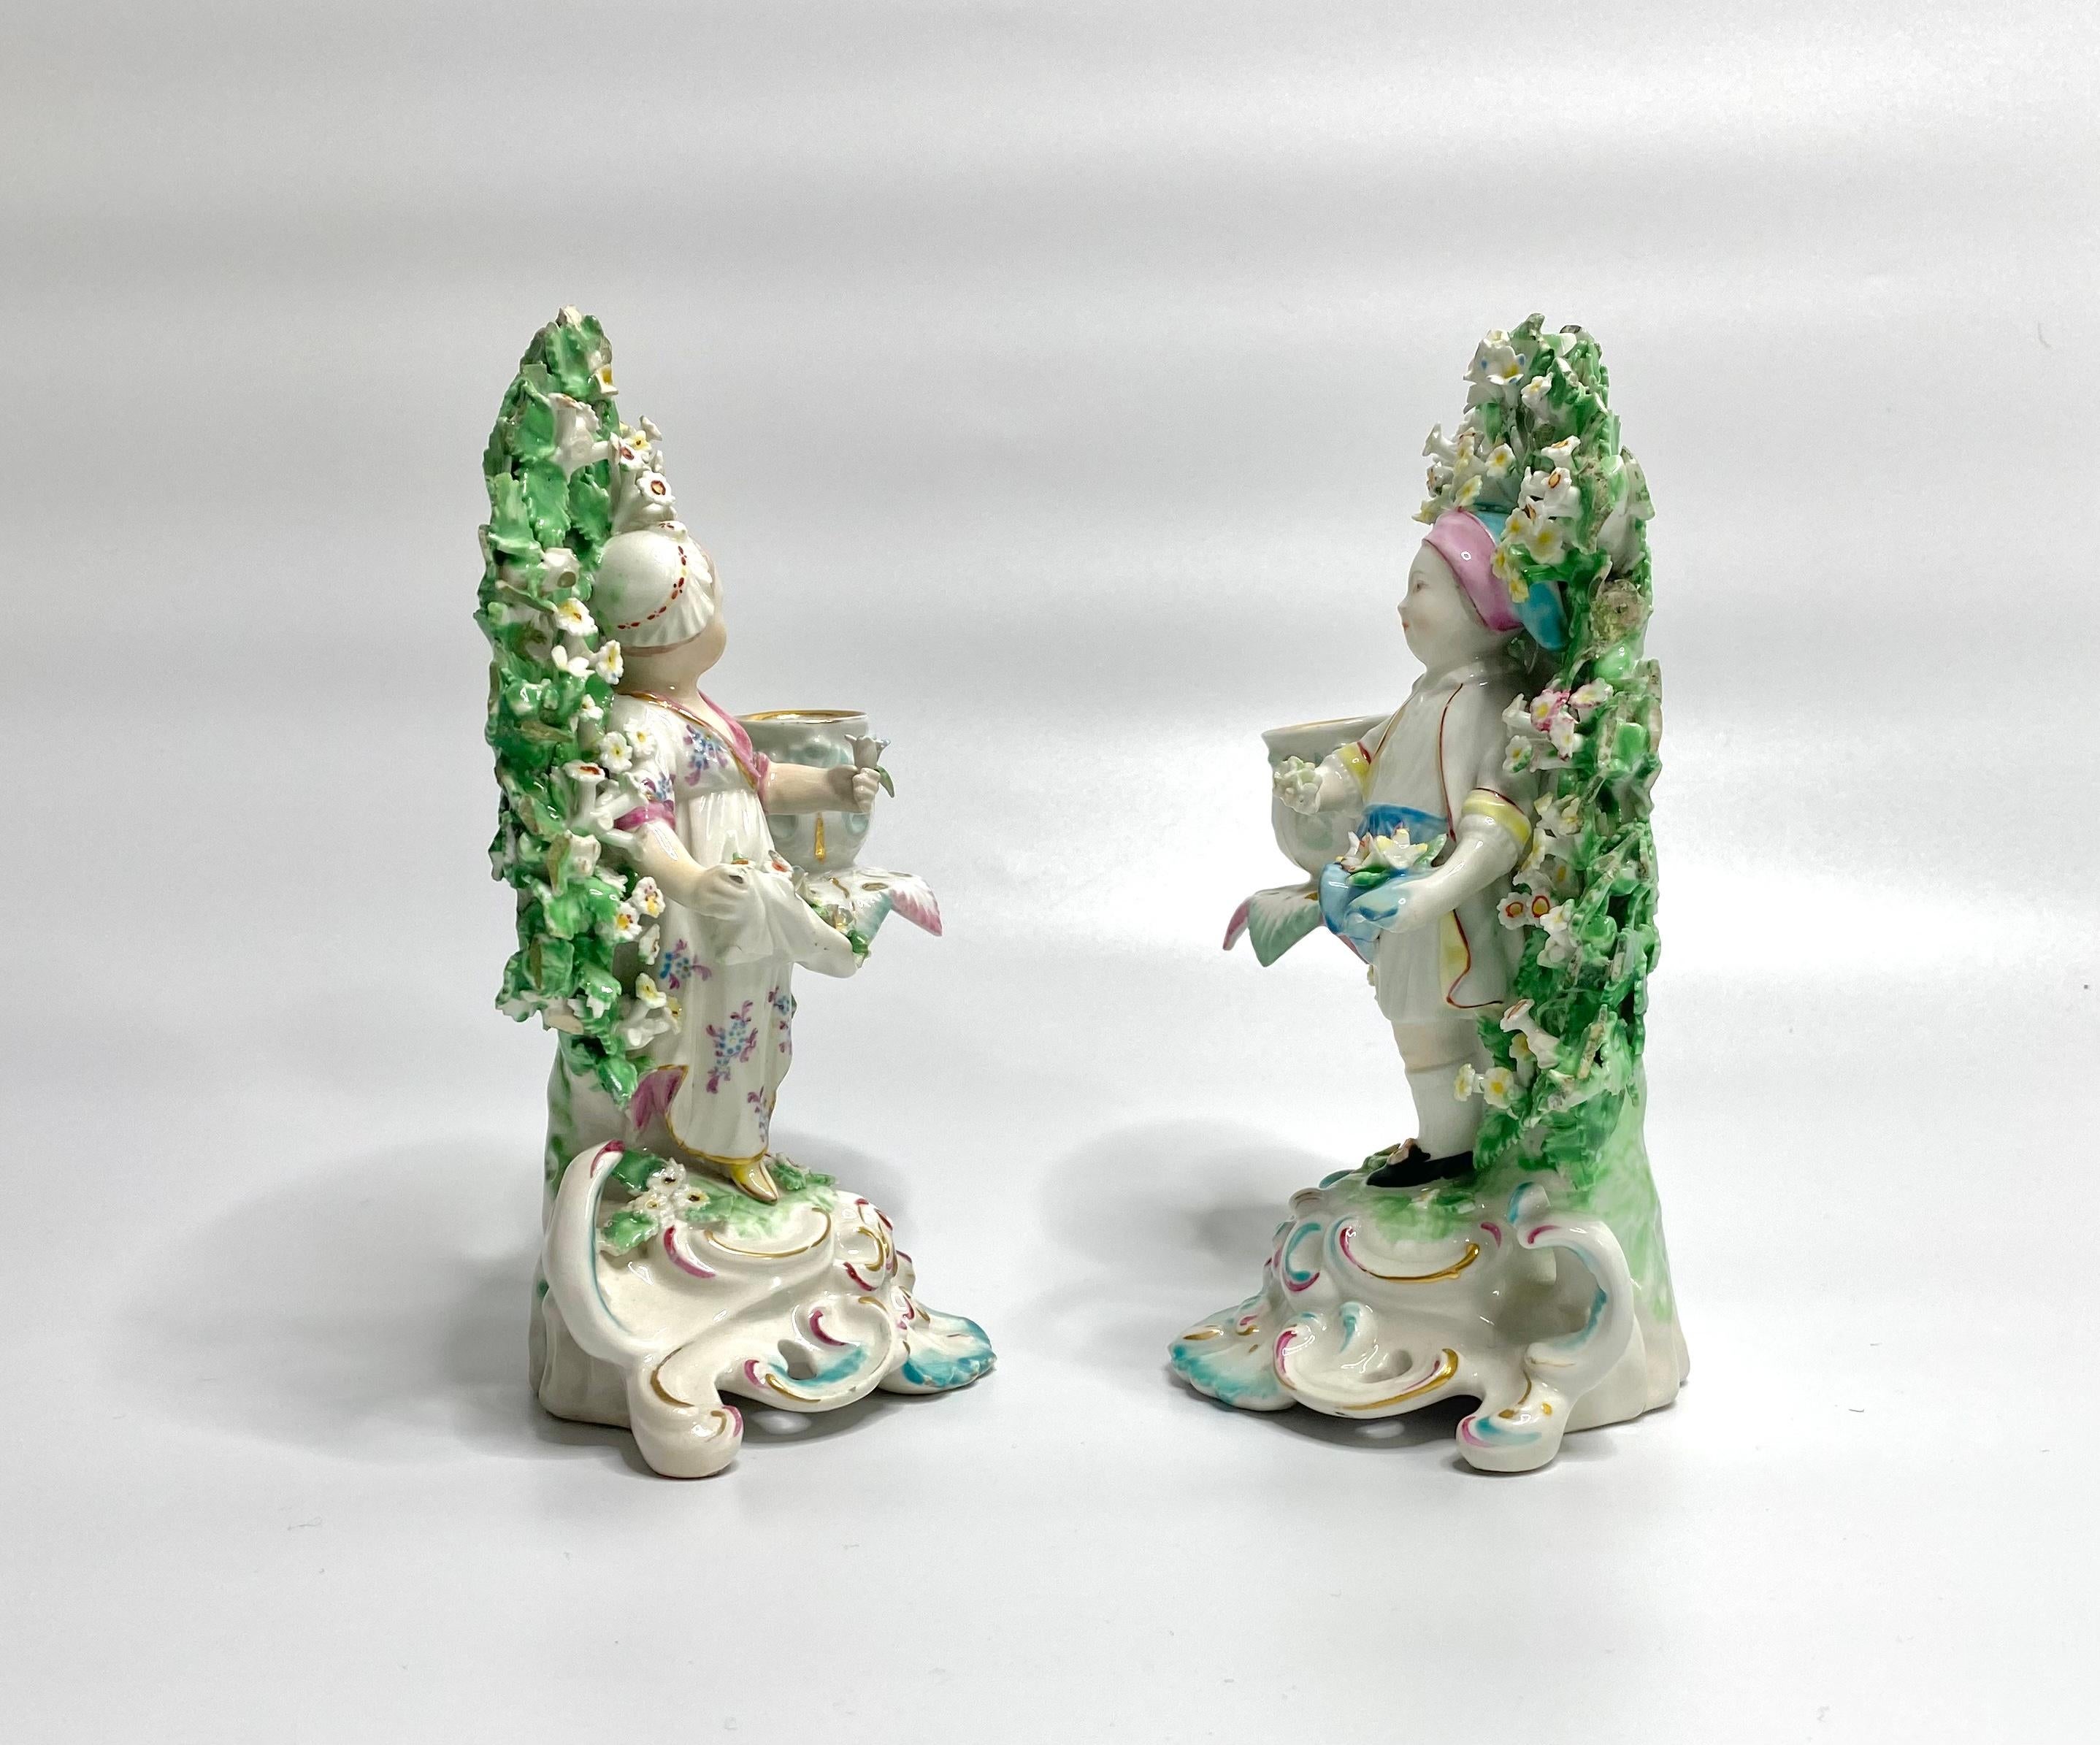 Paire de chandeliers de bocage en porcelaine de Derby, vers 1765. Le modèle représente un garçon et une fille cueillant des fleurs dans leurs tabliers, devant un bocage élaboré. Chaque personnage avec une bougie sortant du bocage.
Montés sur des